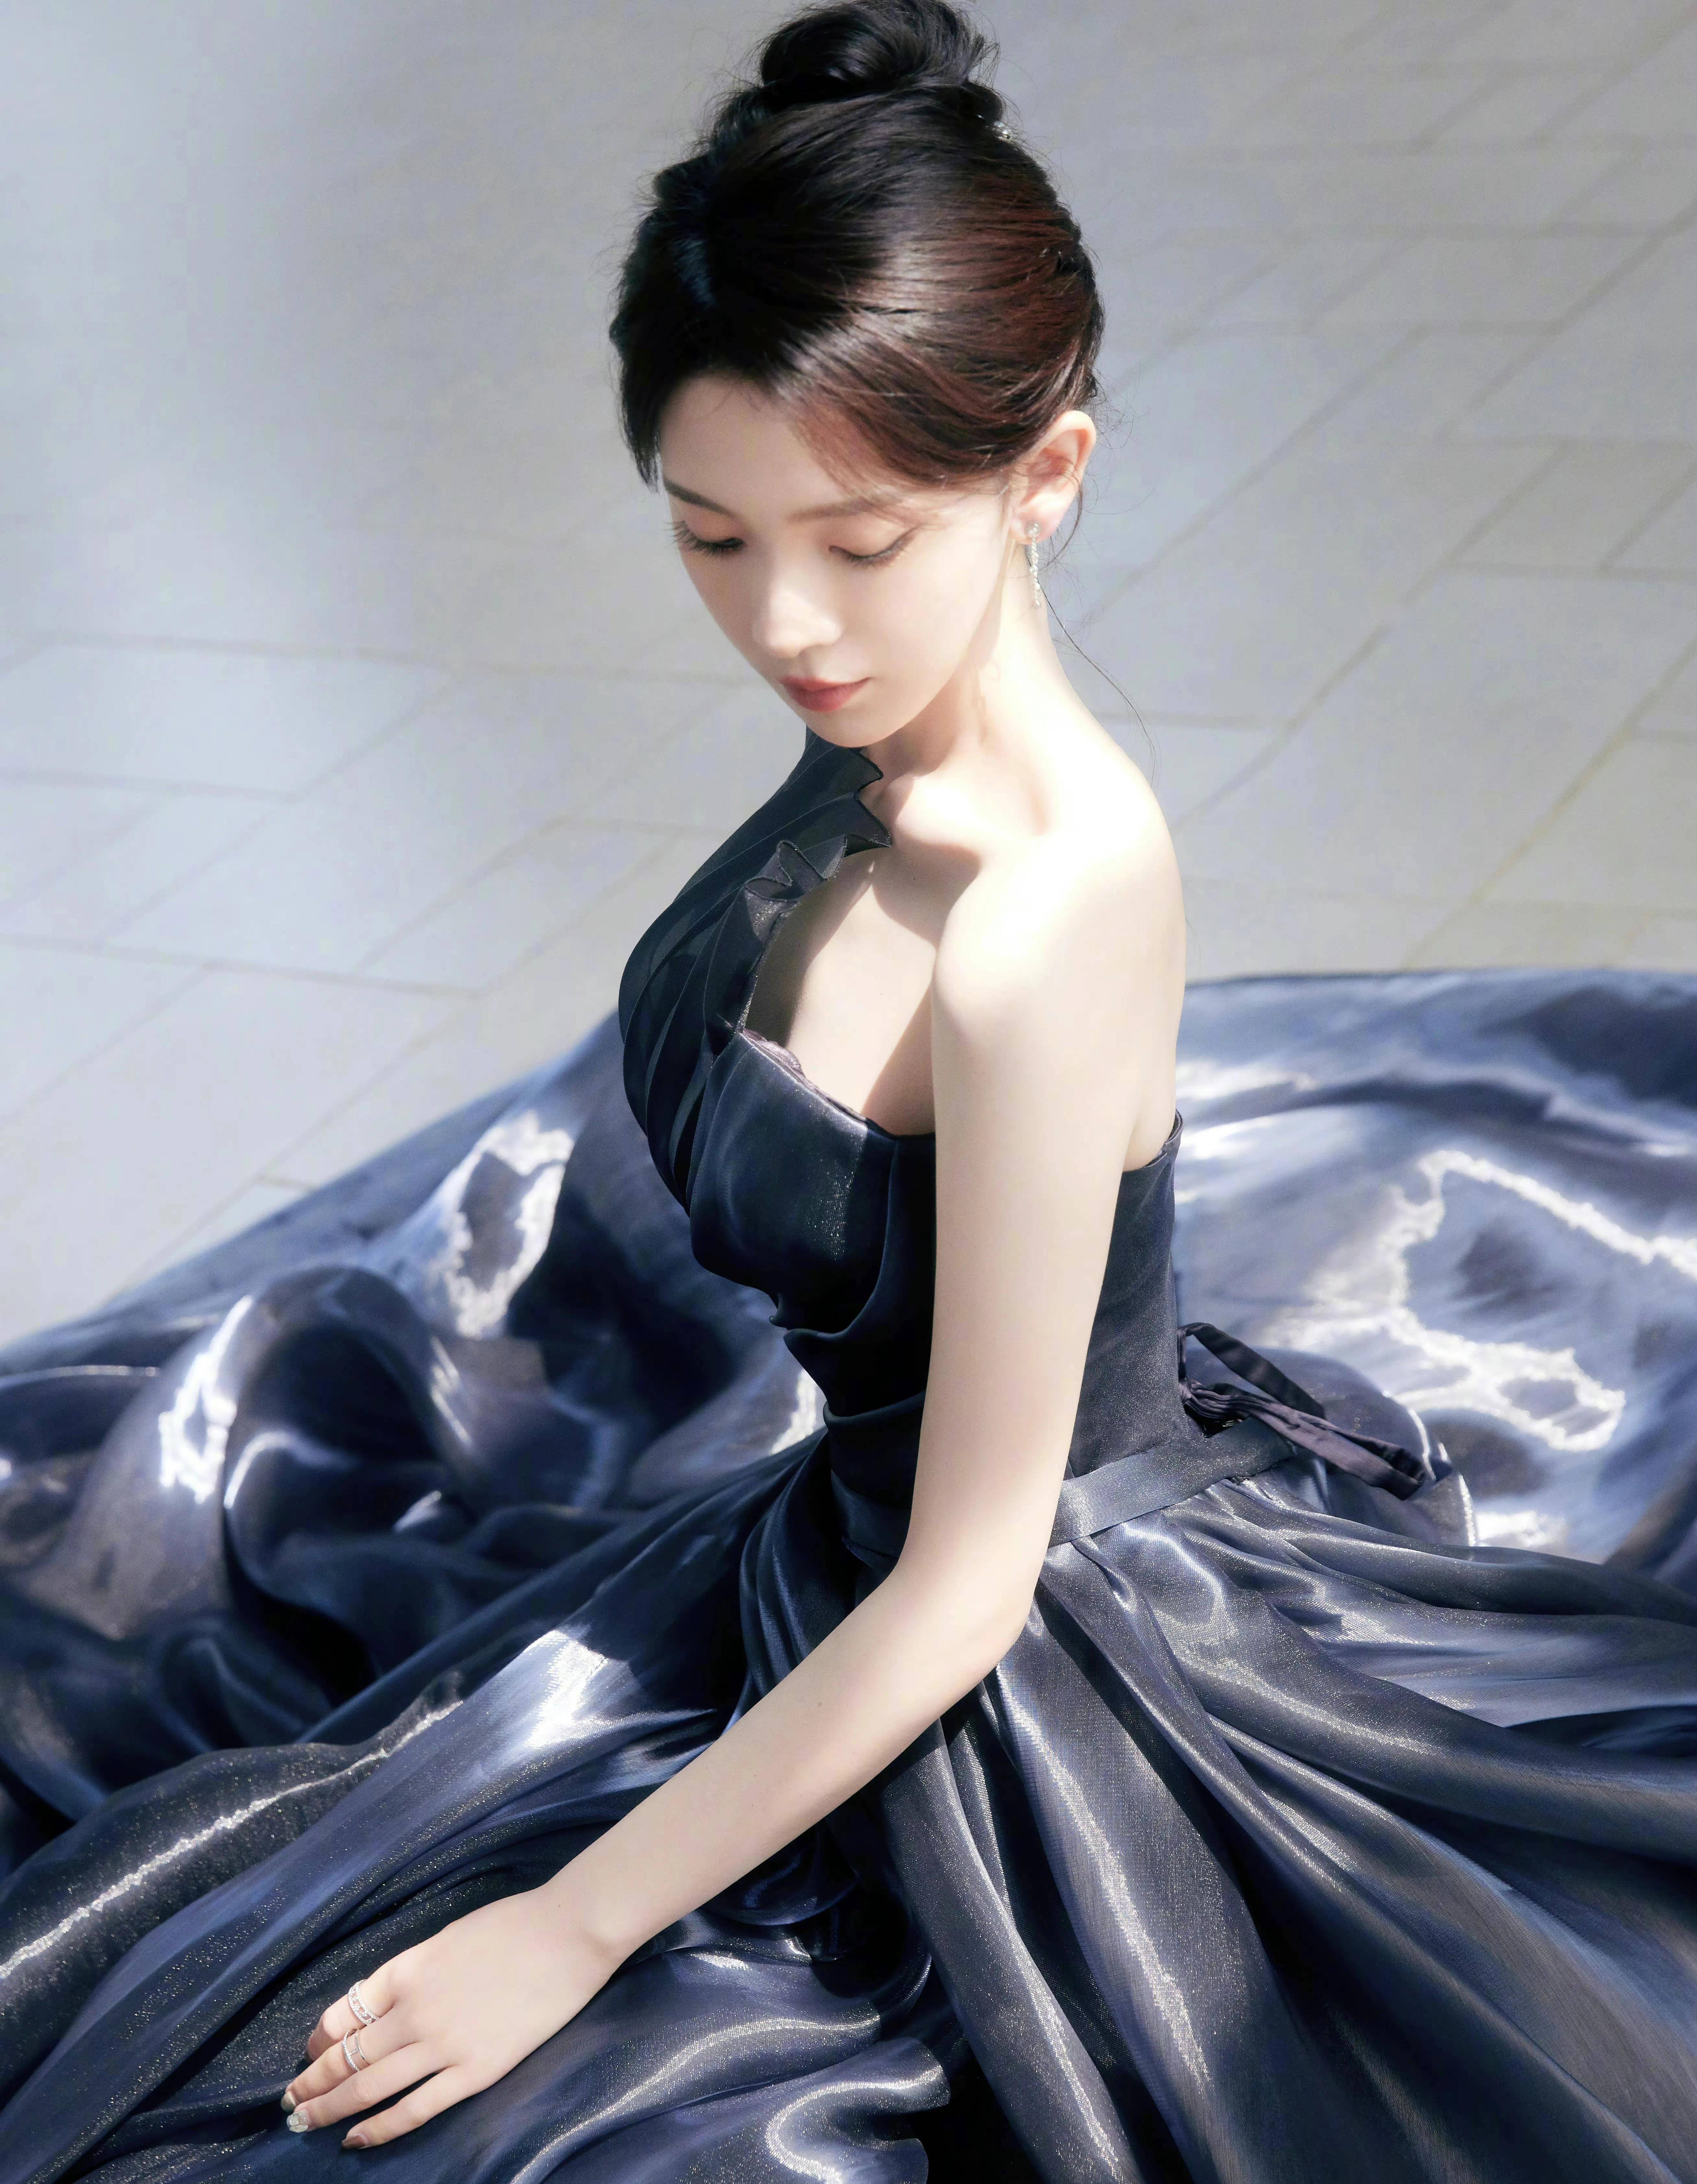 陈瑶藏蓝色抹胸礼服裙造型好仙,天鹅颈好优美,整个人在发光